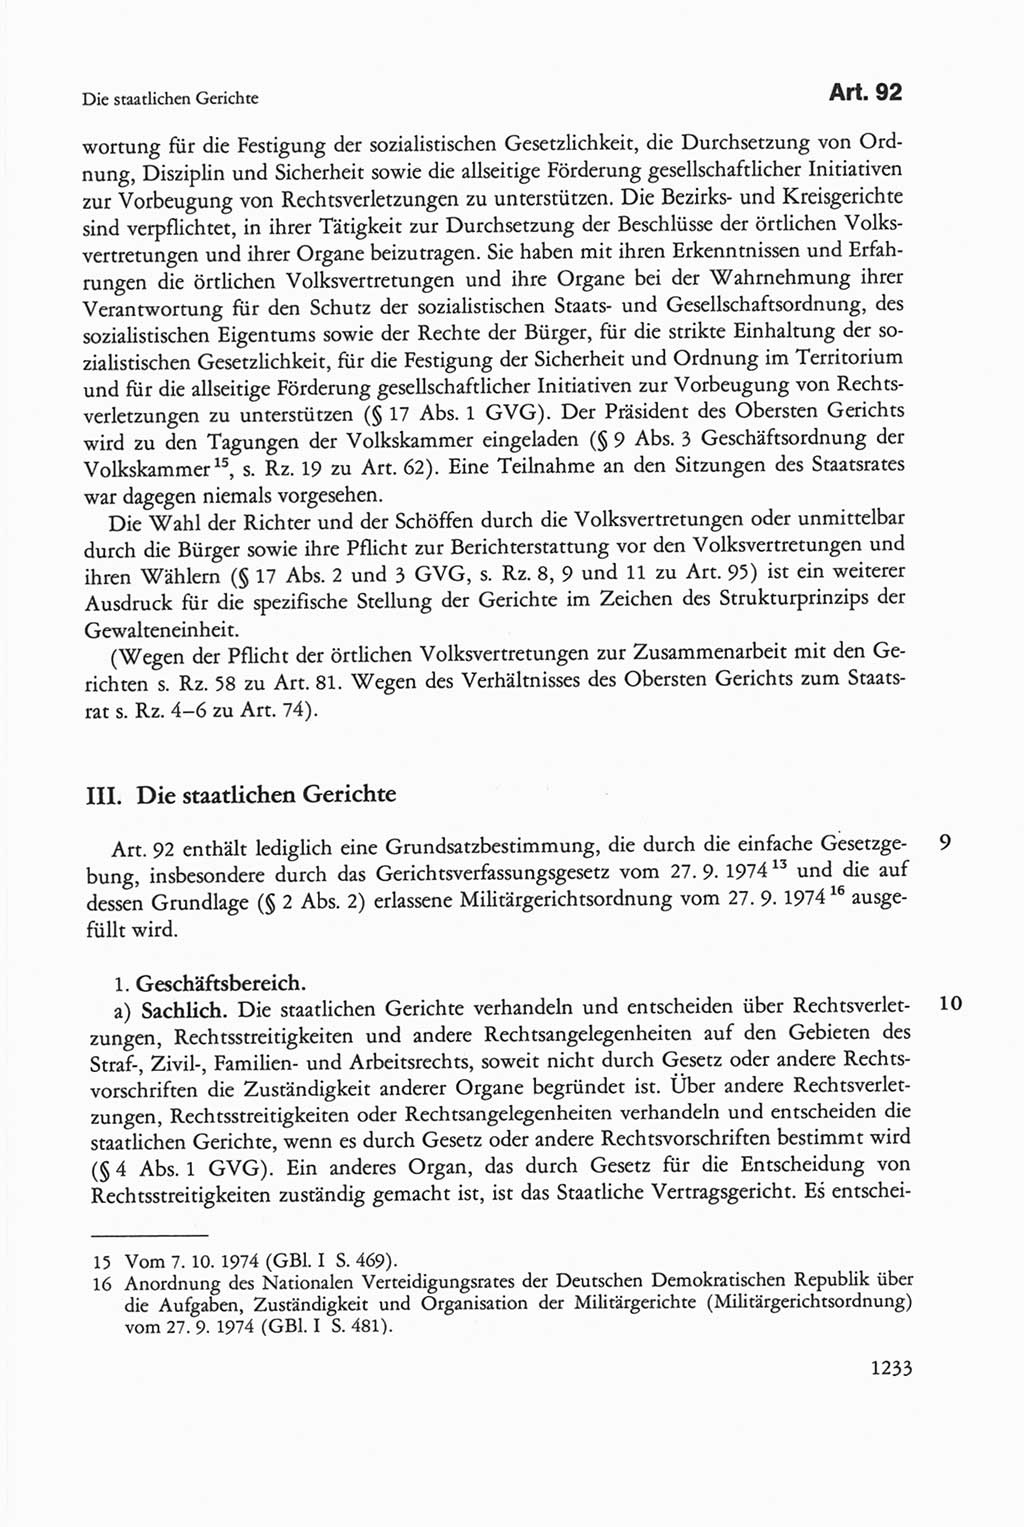 Die sozialistische Verfassung der Deutschen Demokratischen Republik (DDR), Kommentar mit einem Nachtrag 1997, Seite 1233 (Soz. Verf. DDR Komm. Nachtr. 1997, S. 1233)